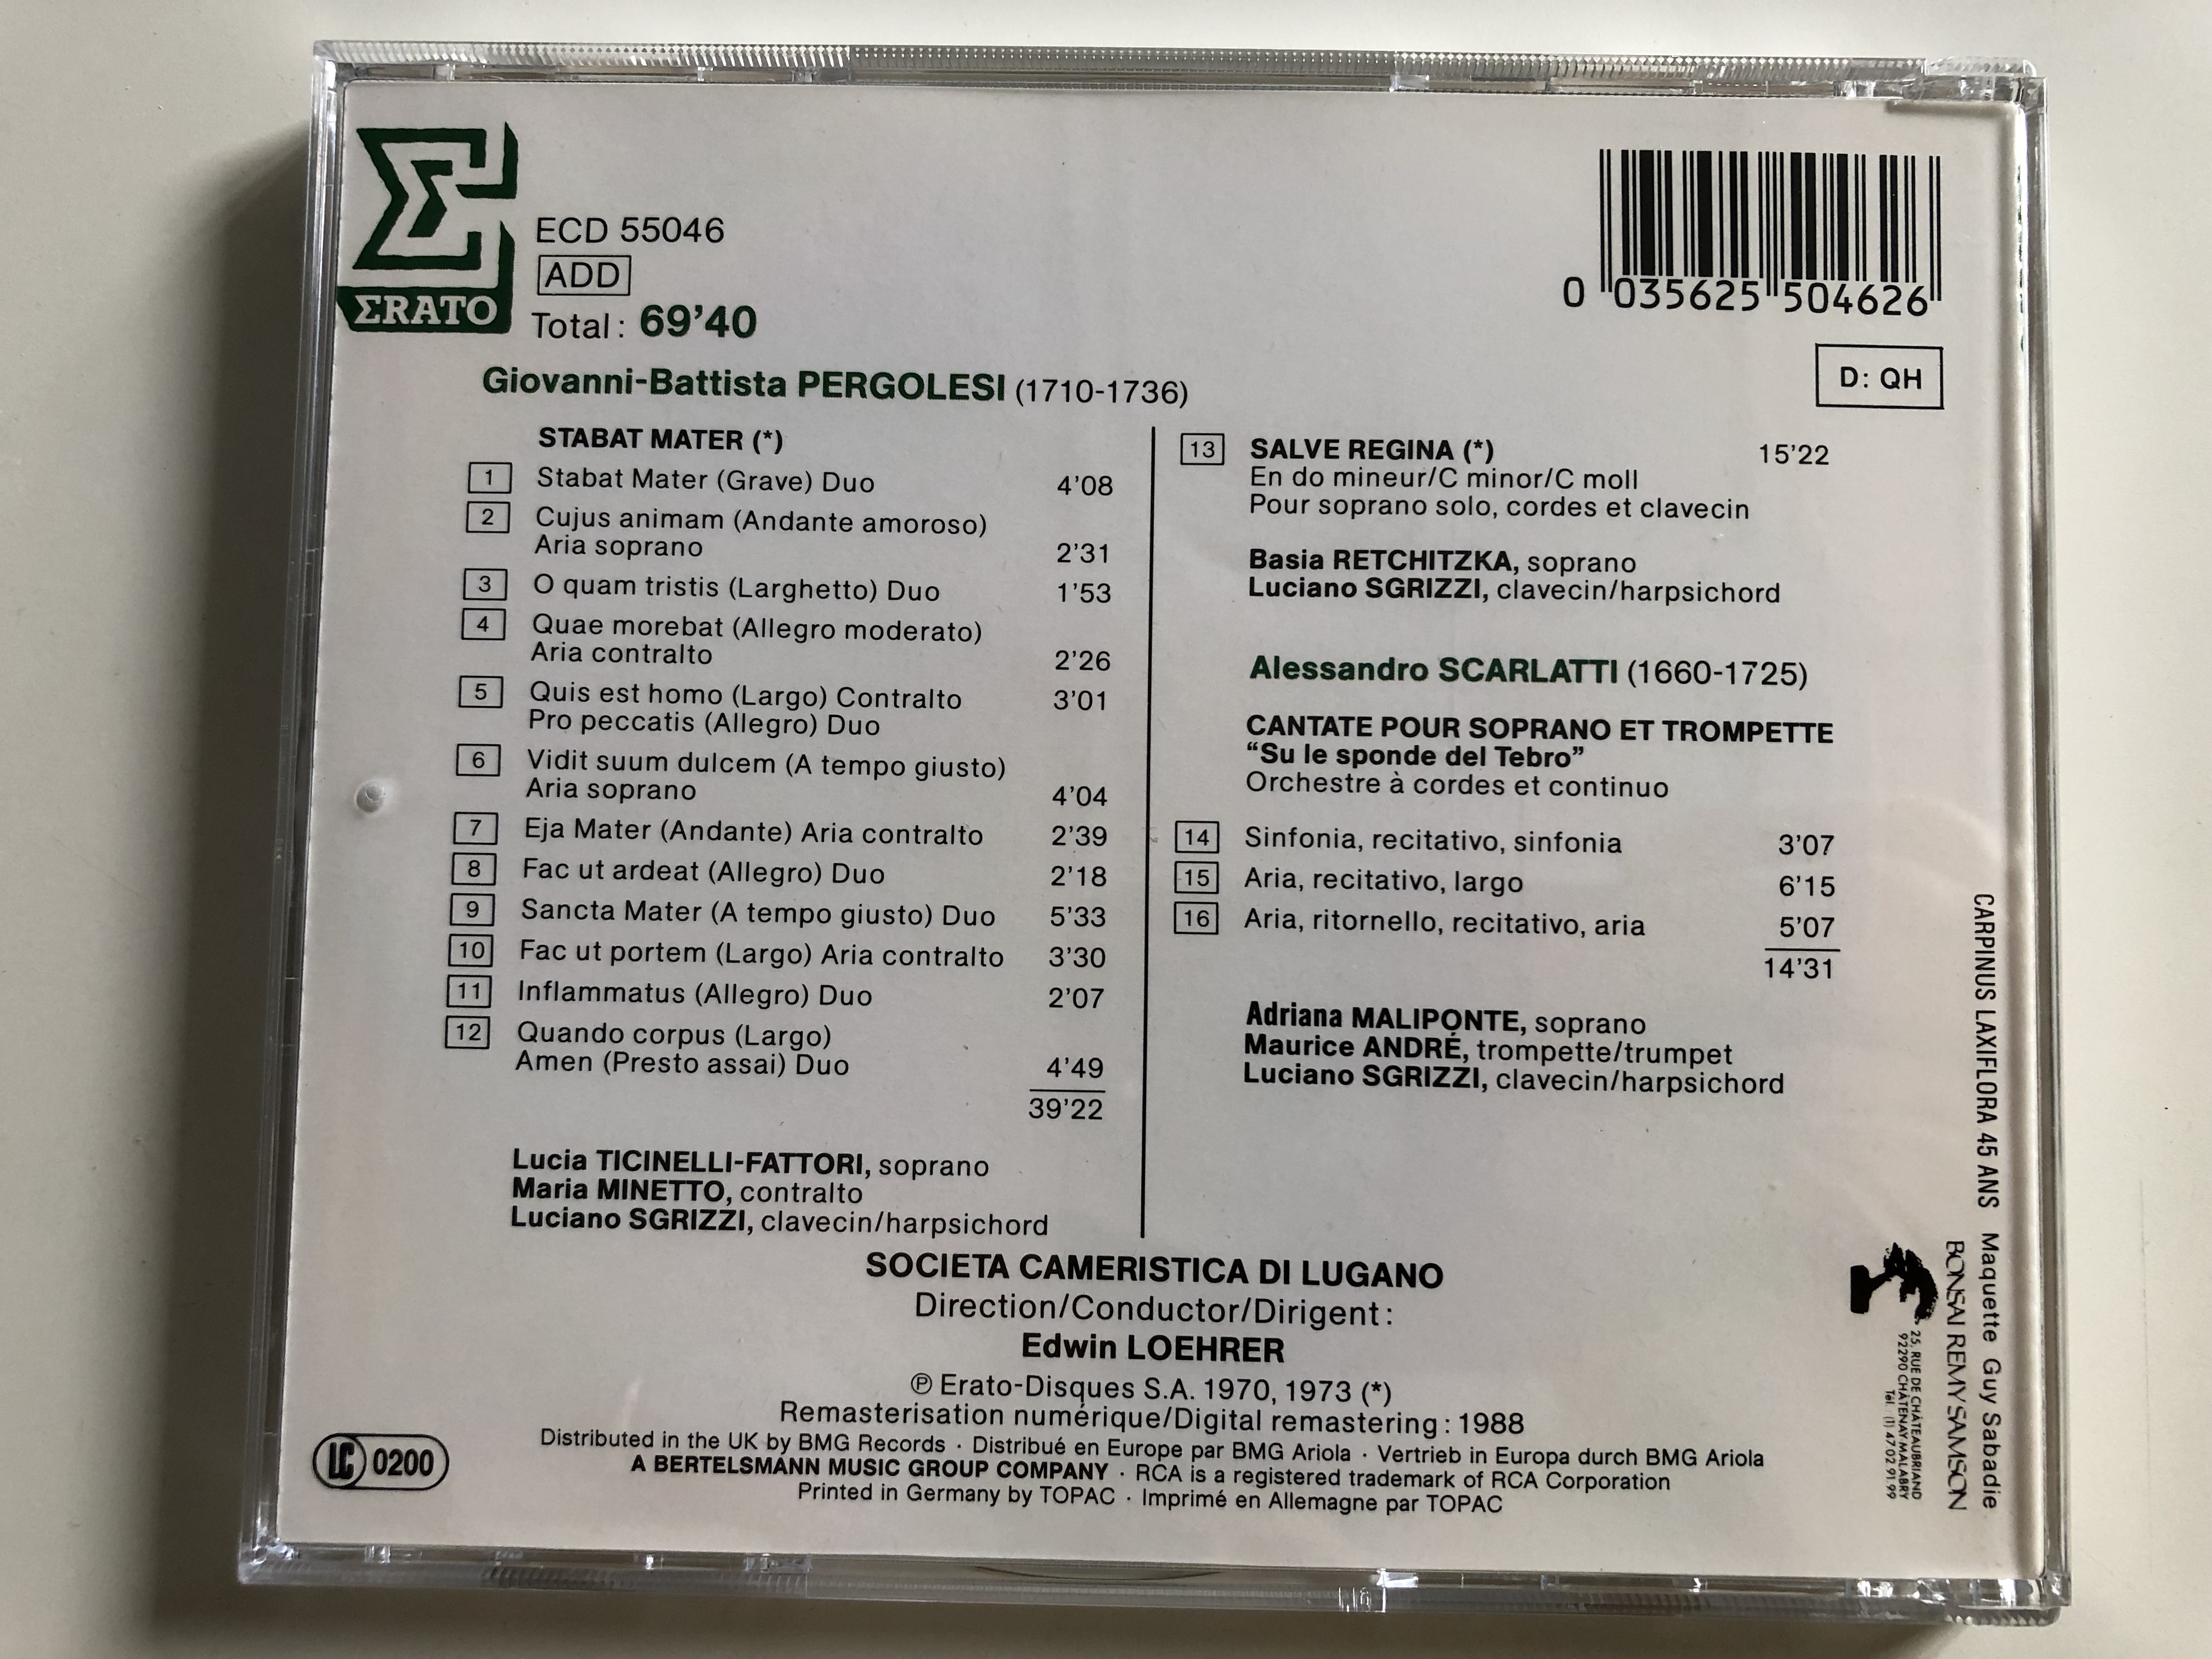 pergolesi-stabat-mater-salve-regina-scarlatti-cantate-su-le-sponde-del-tebro-societa-cameristica-di-lugano-conducted-by-edwin-loehrer-ecd-55046-audio-cd-1988-4-.jpg